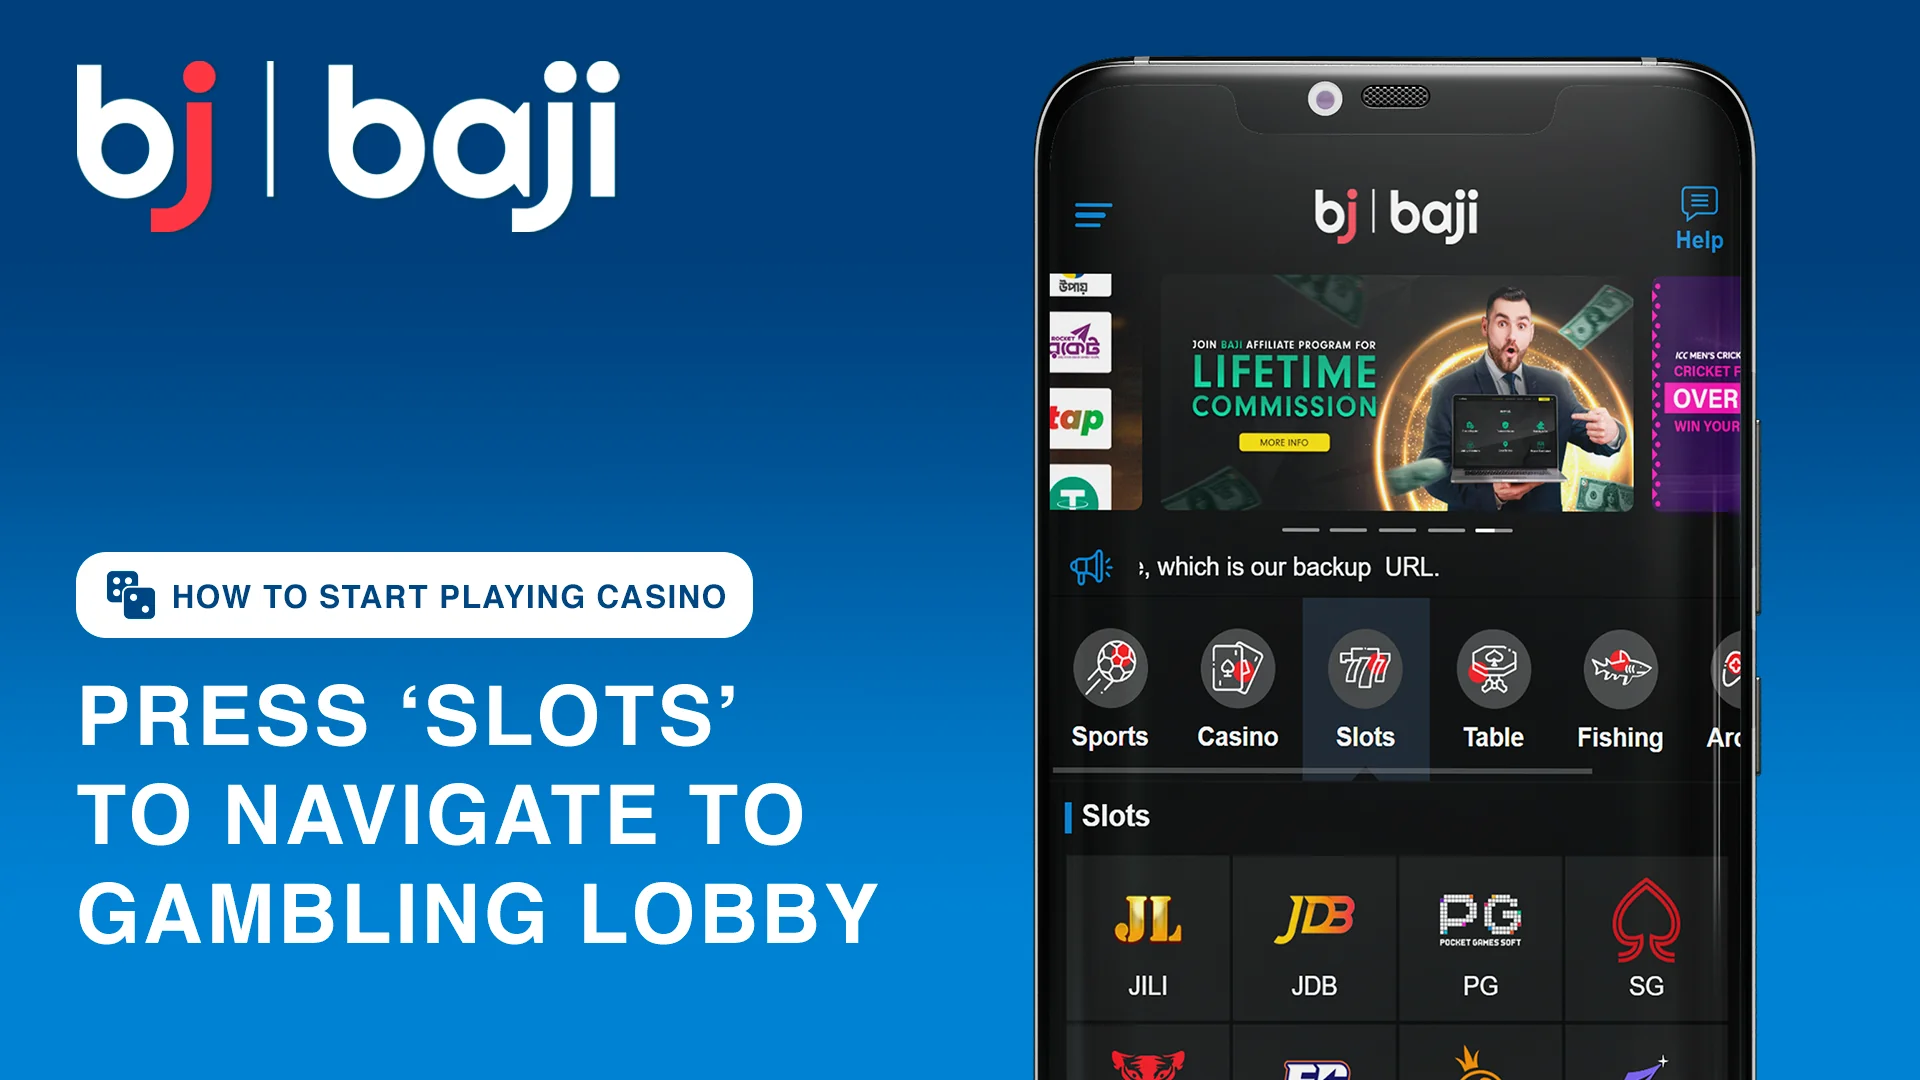 Press 'Slots' button to navigate to gaming lobby - Baji Bangladesh